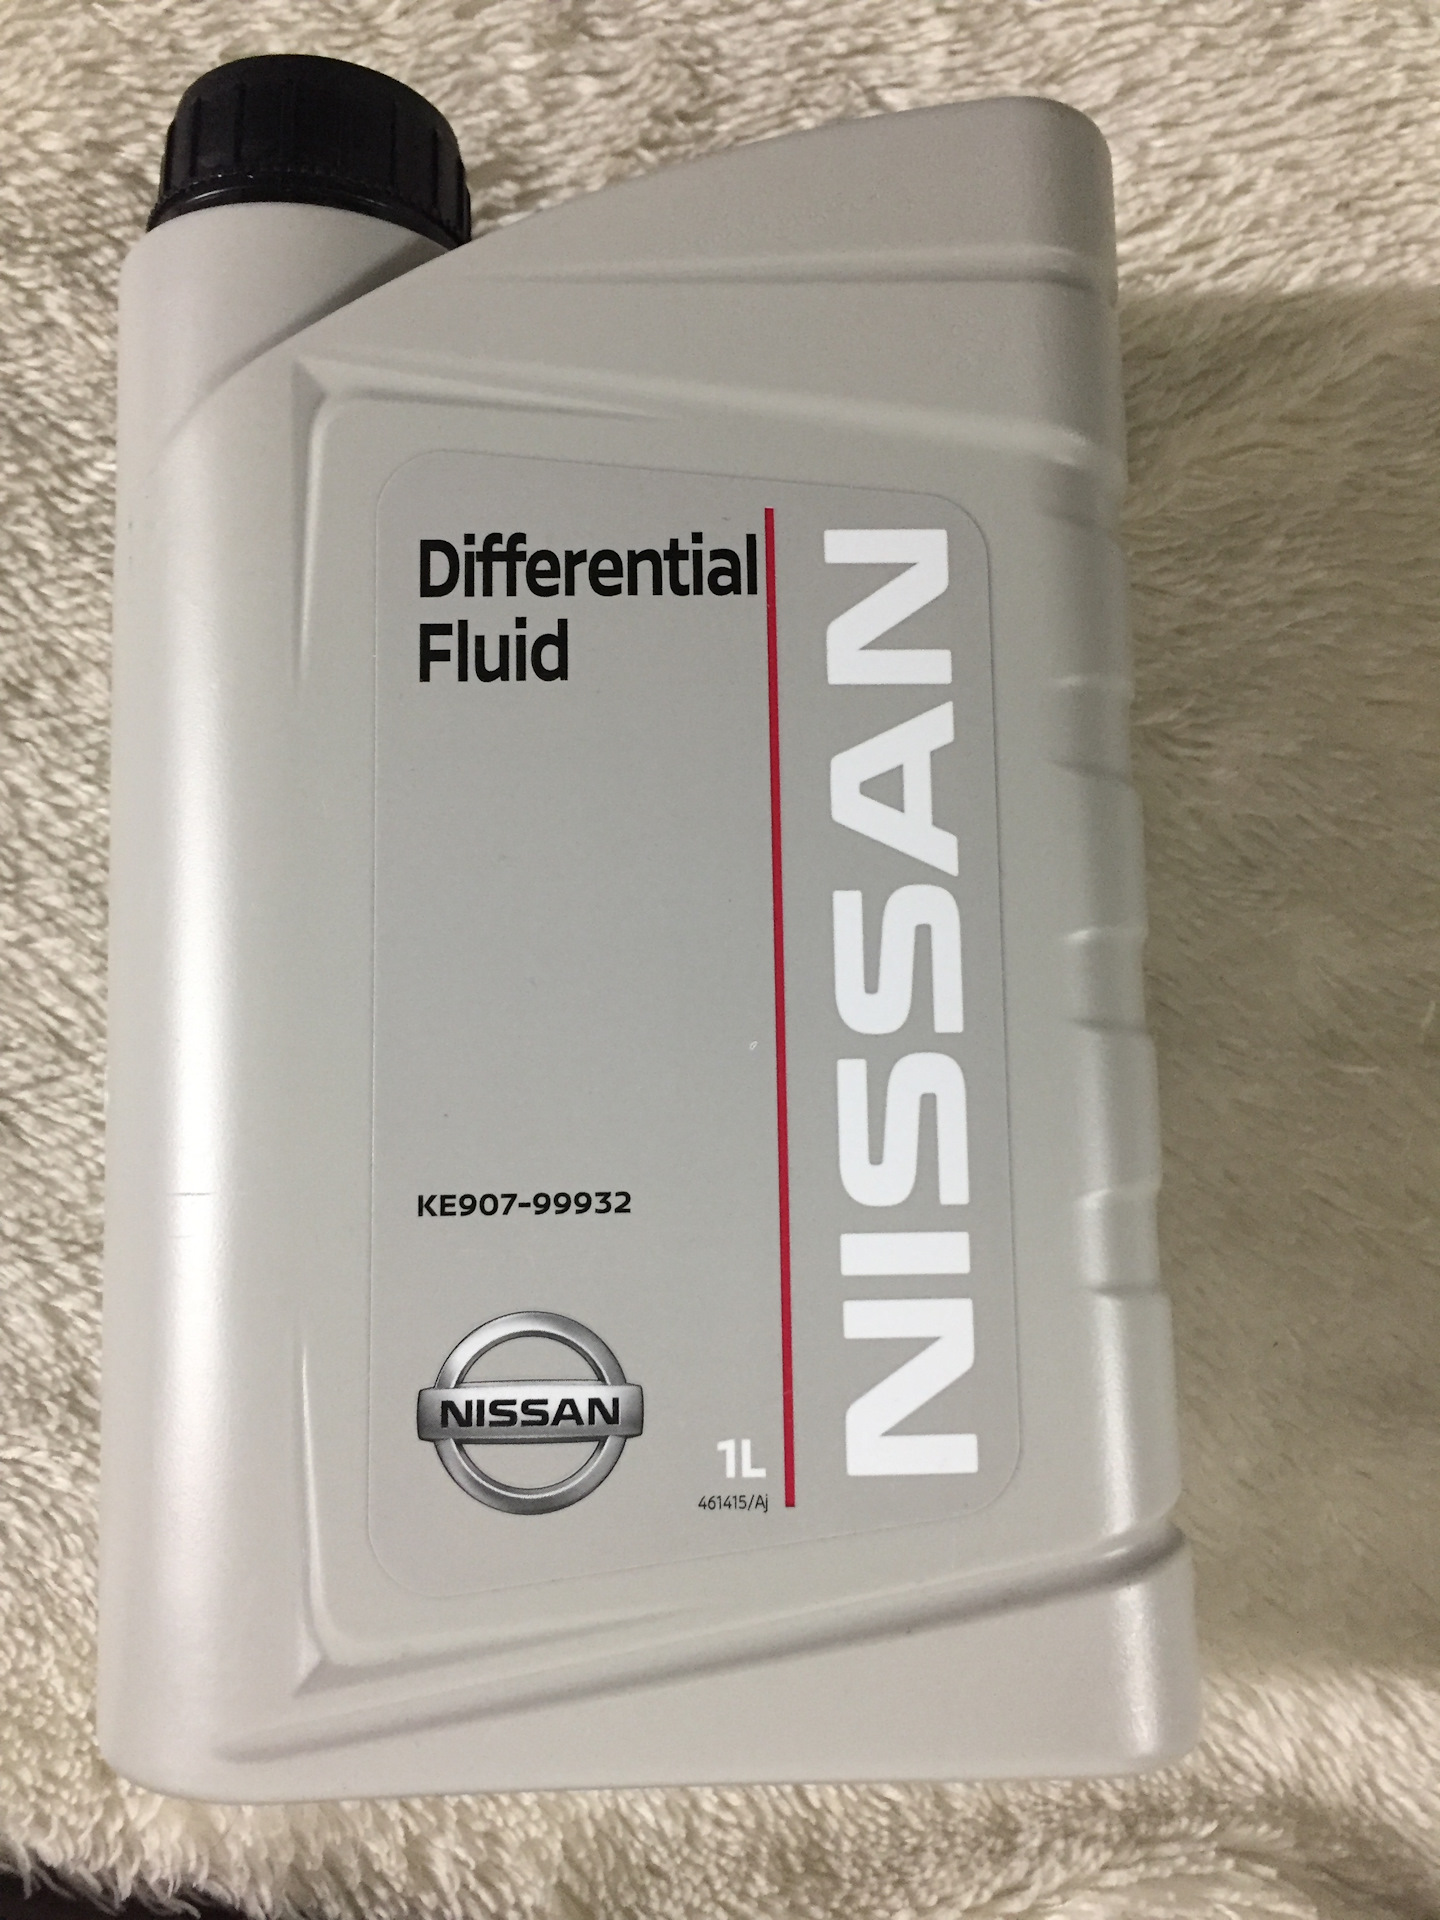 Atf matic j. ATF Nissan matic j 5л. Nissan ATF matic j Fluid. Nissan Differential Fluid(ke907-99932). Ke907-99932 gl-5 80w90.